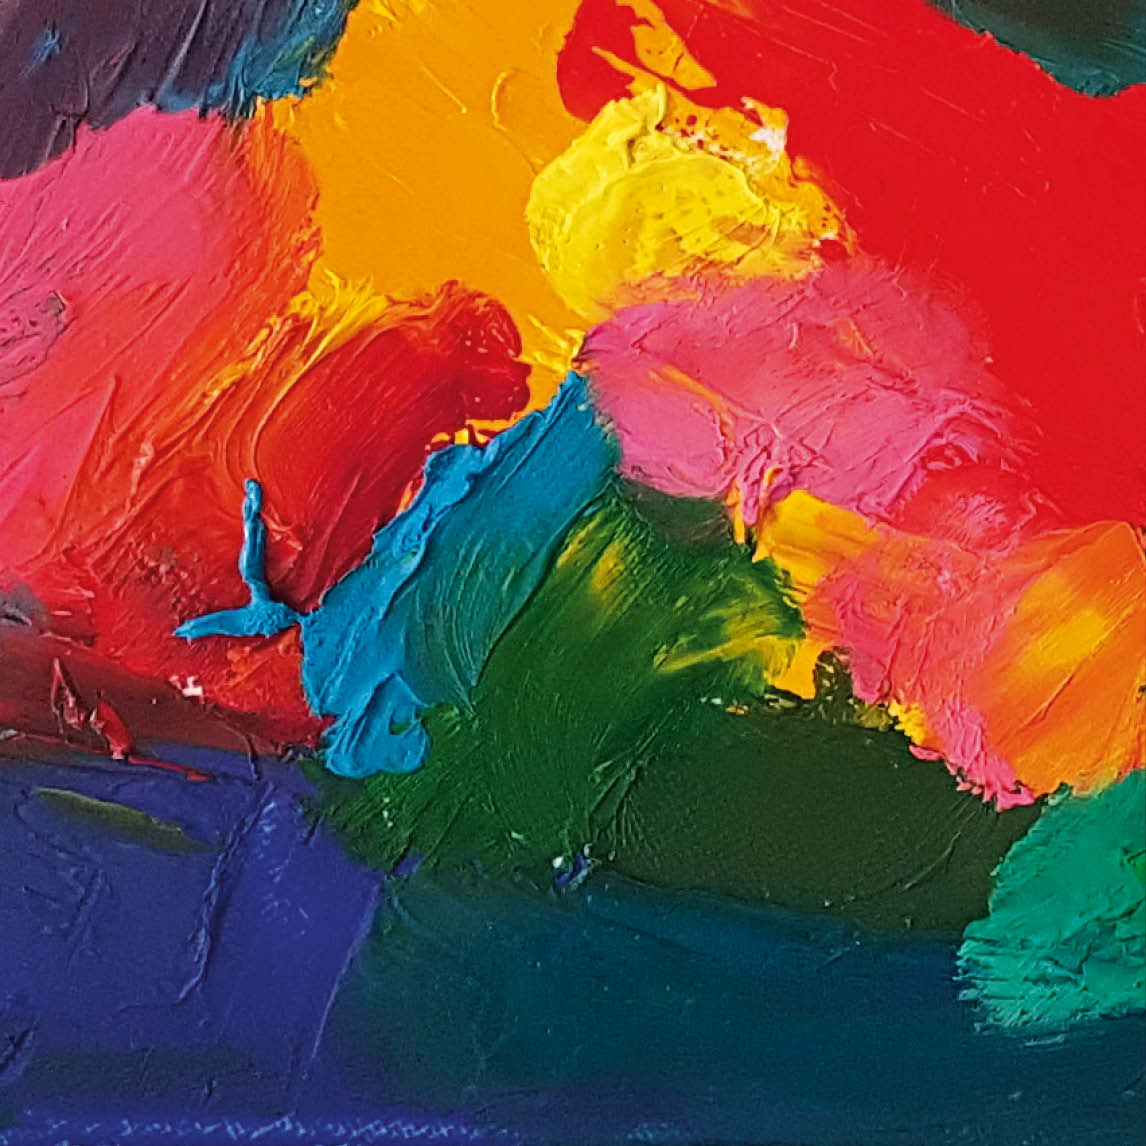 Ein Nahaufnahmebild eines farbenprächtigen, abstrakten Ölgemäldes, das eine lebendige Mischung aus Rot, Gelb, Pink, Grün und Blau zeigt. Die Farben...